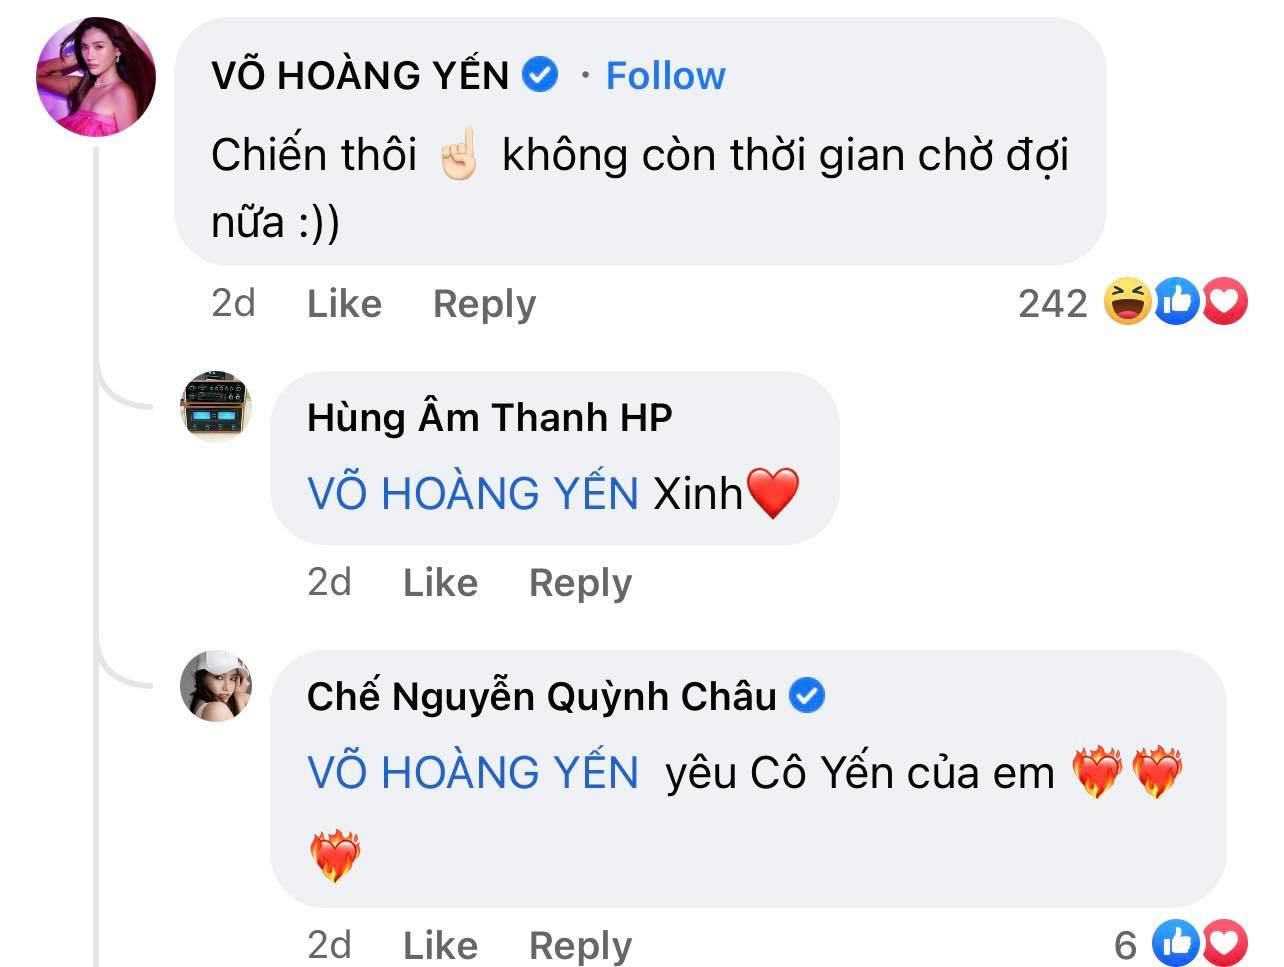 che nguyen quynh chau 3 Chế Nguyễn Quỳnh Châu chưa thi Miss Grand đã được fan trong nước lẫn quốc tế ủng hộ thế này!